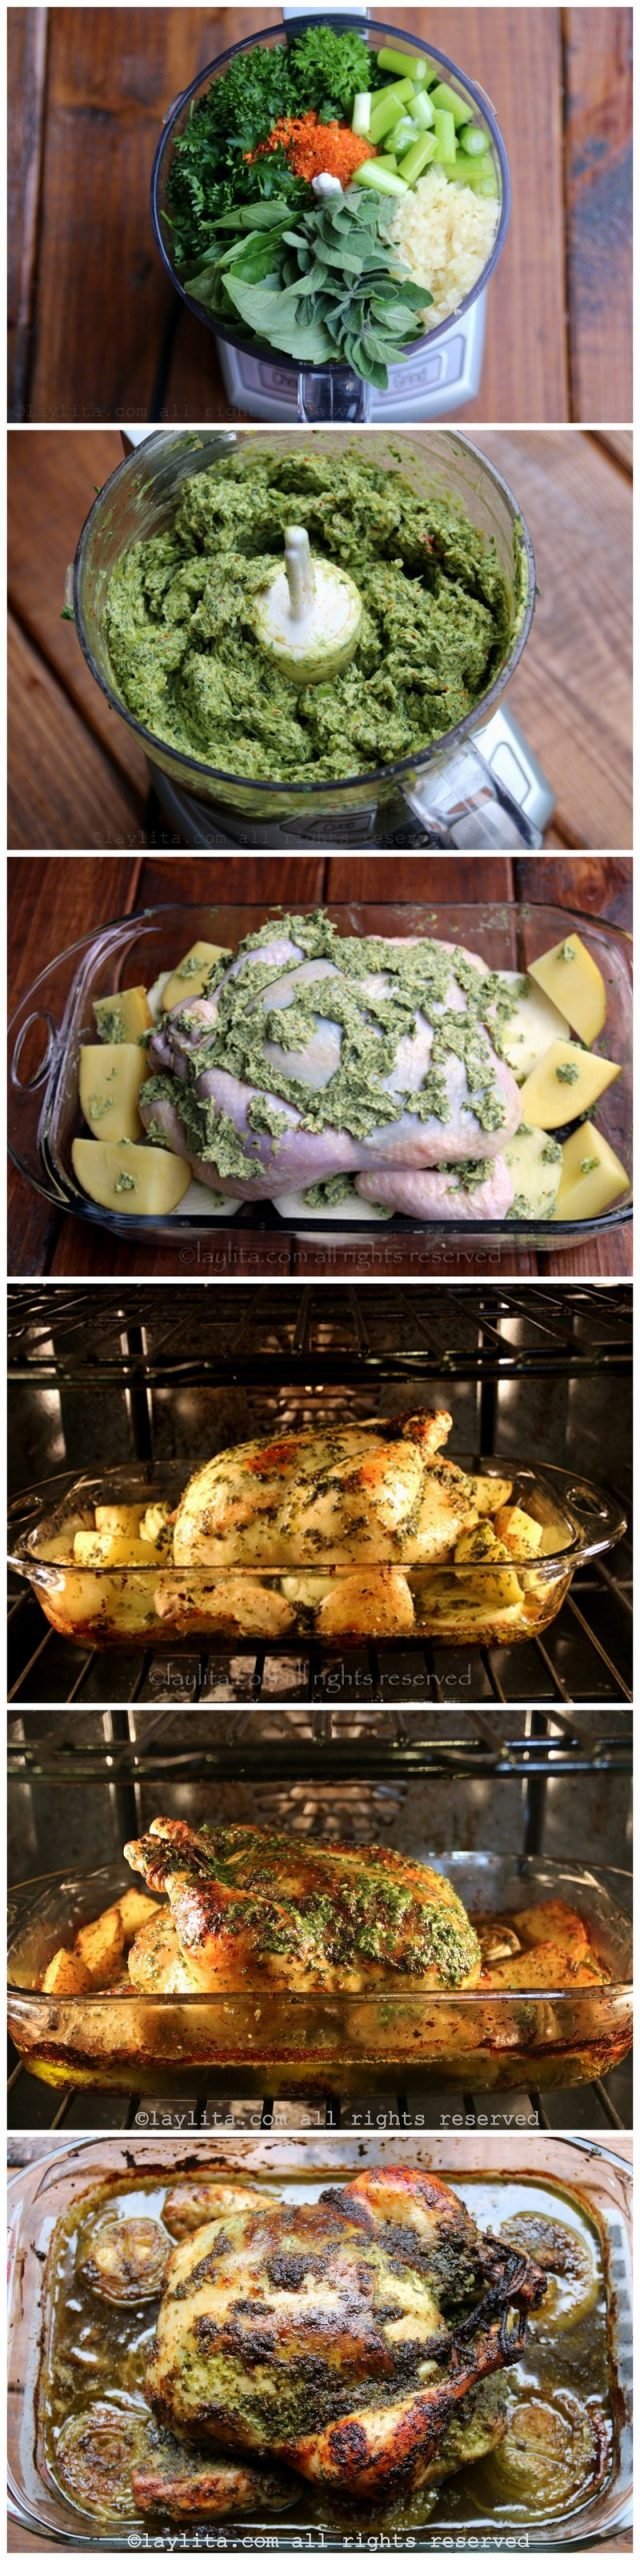 Fotos do passo a passo para preparar o frango assado com manteiga de chimichurri